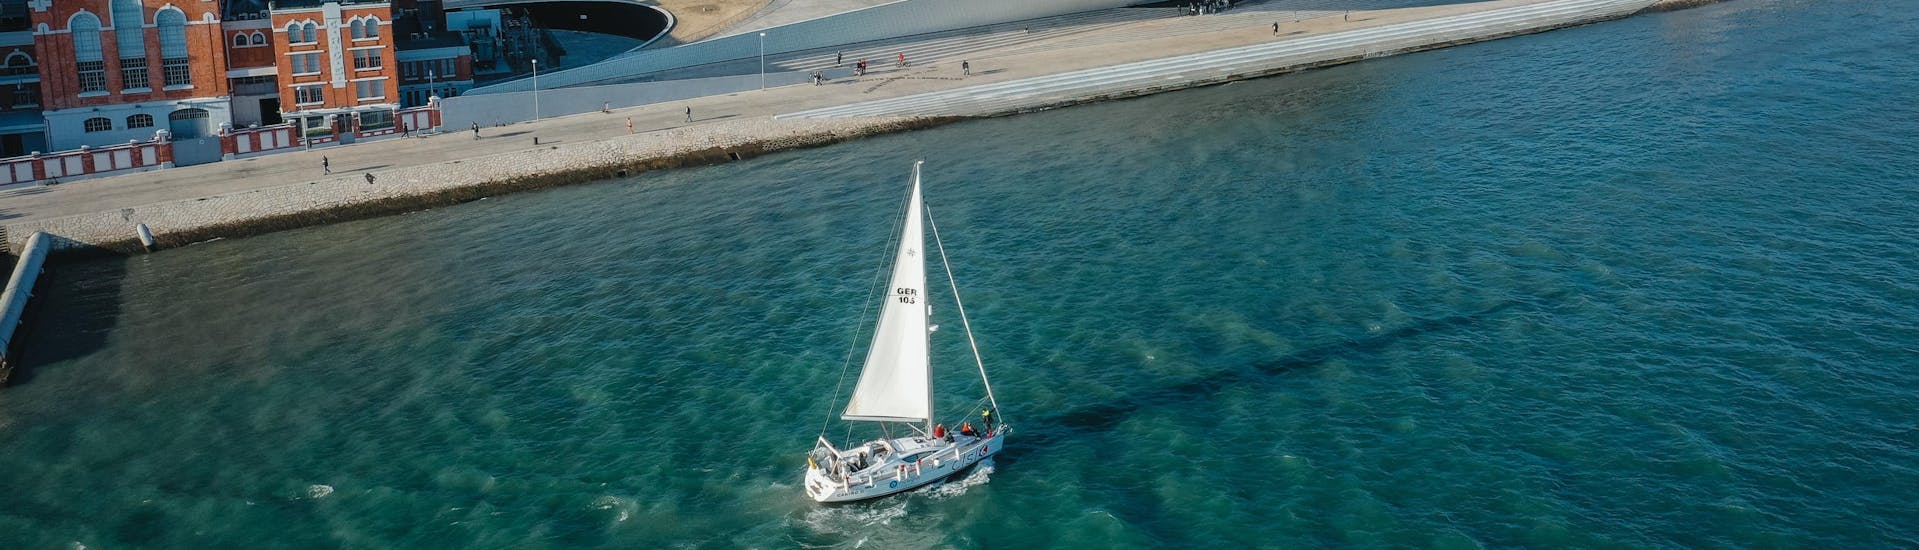 Zeilboottocht van Doca de Alcântara naar Taag (Tejo) met toeristische attracties.